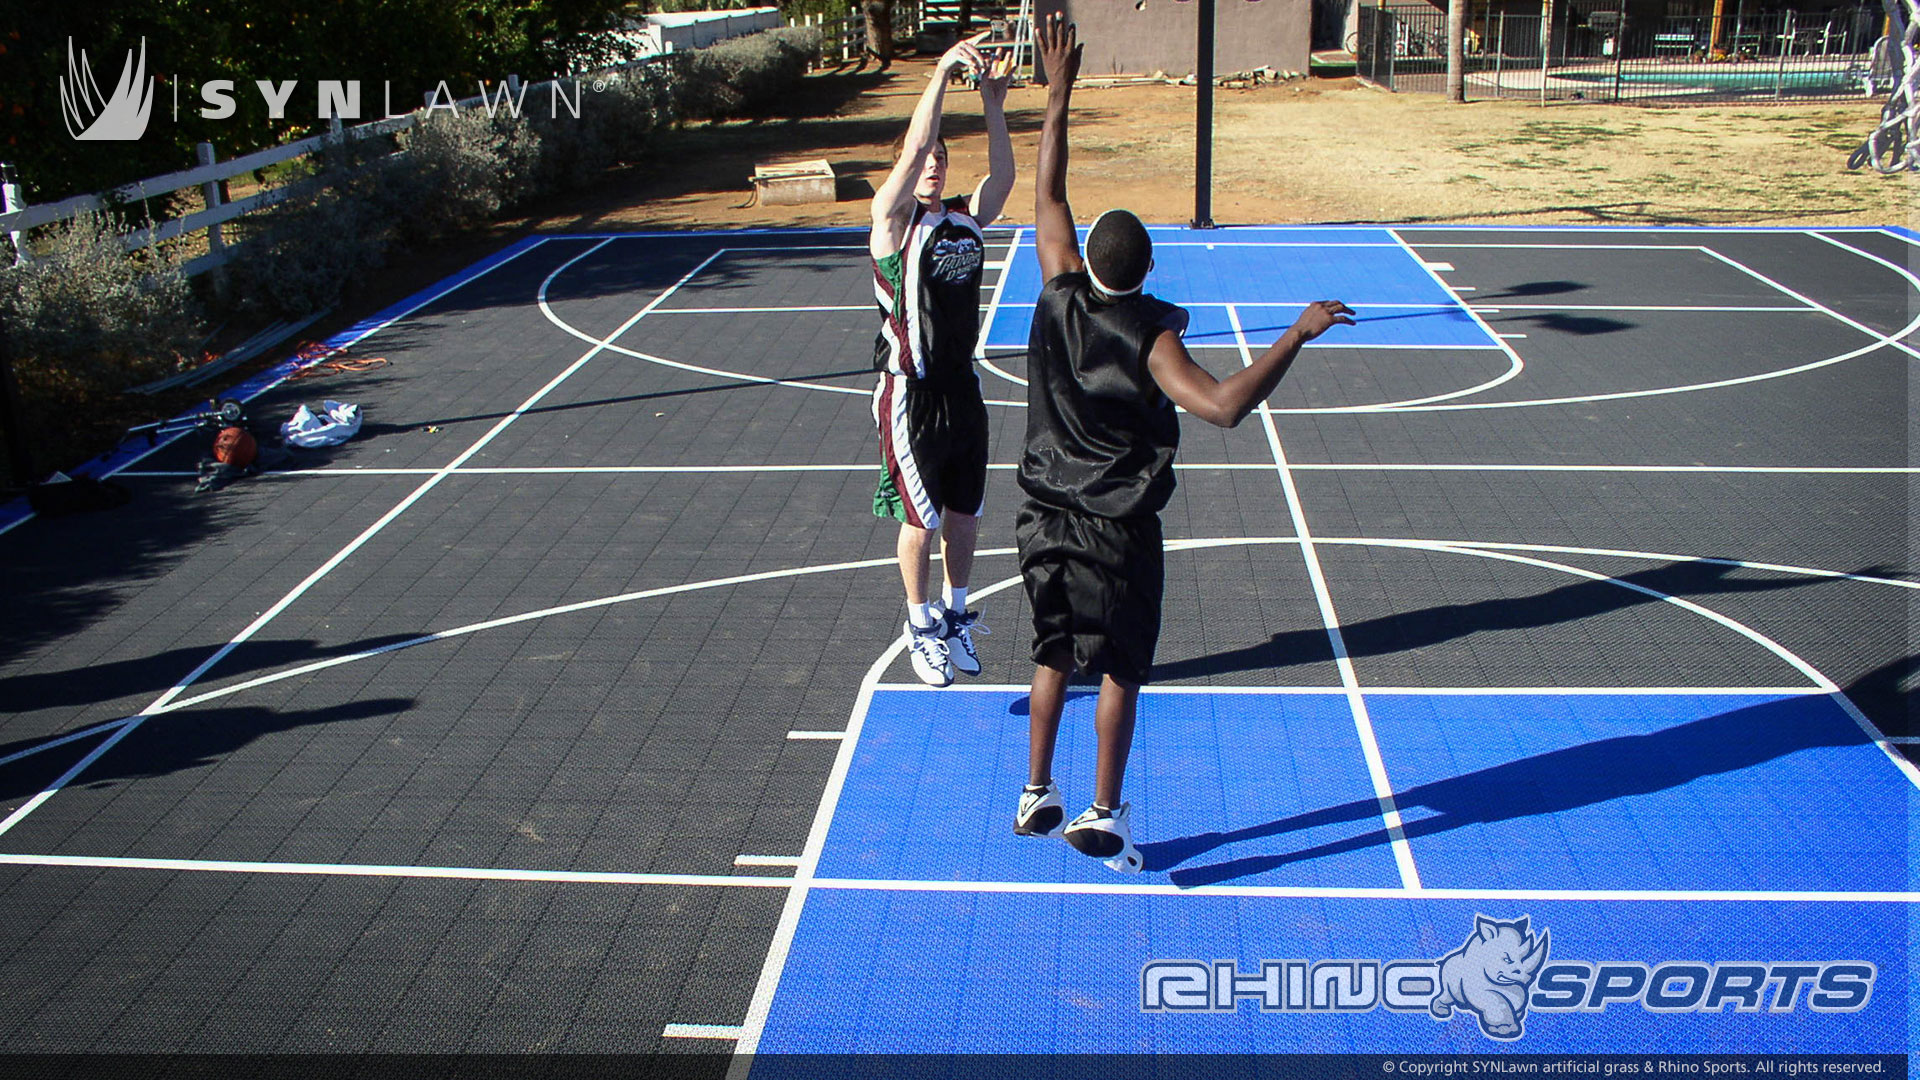 image of boys playing basketball on backyard bball court